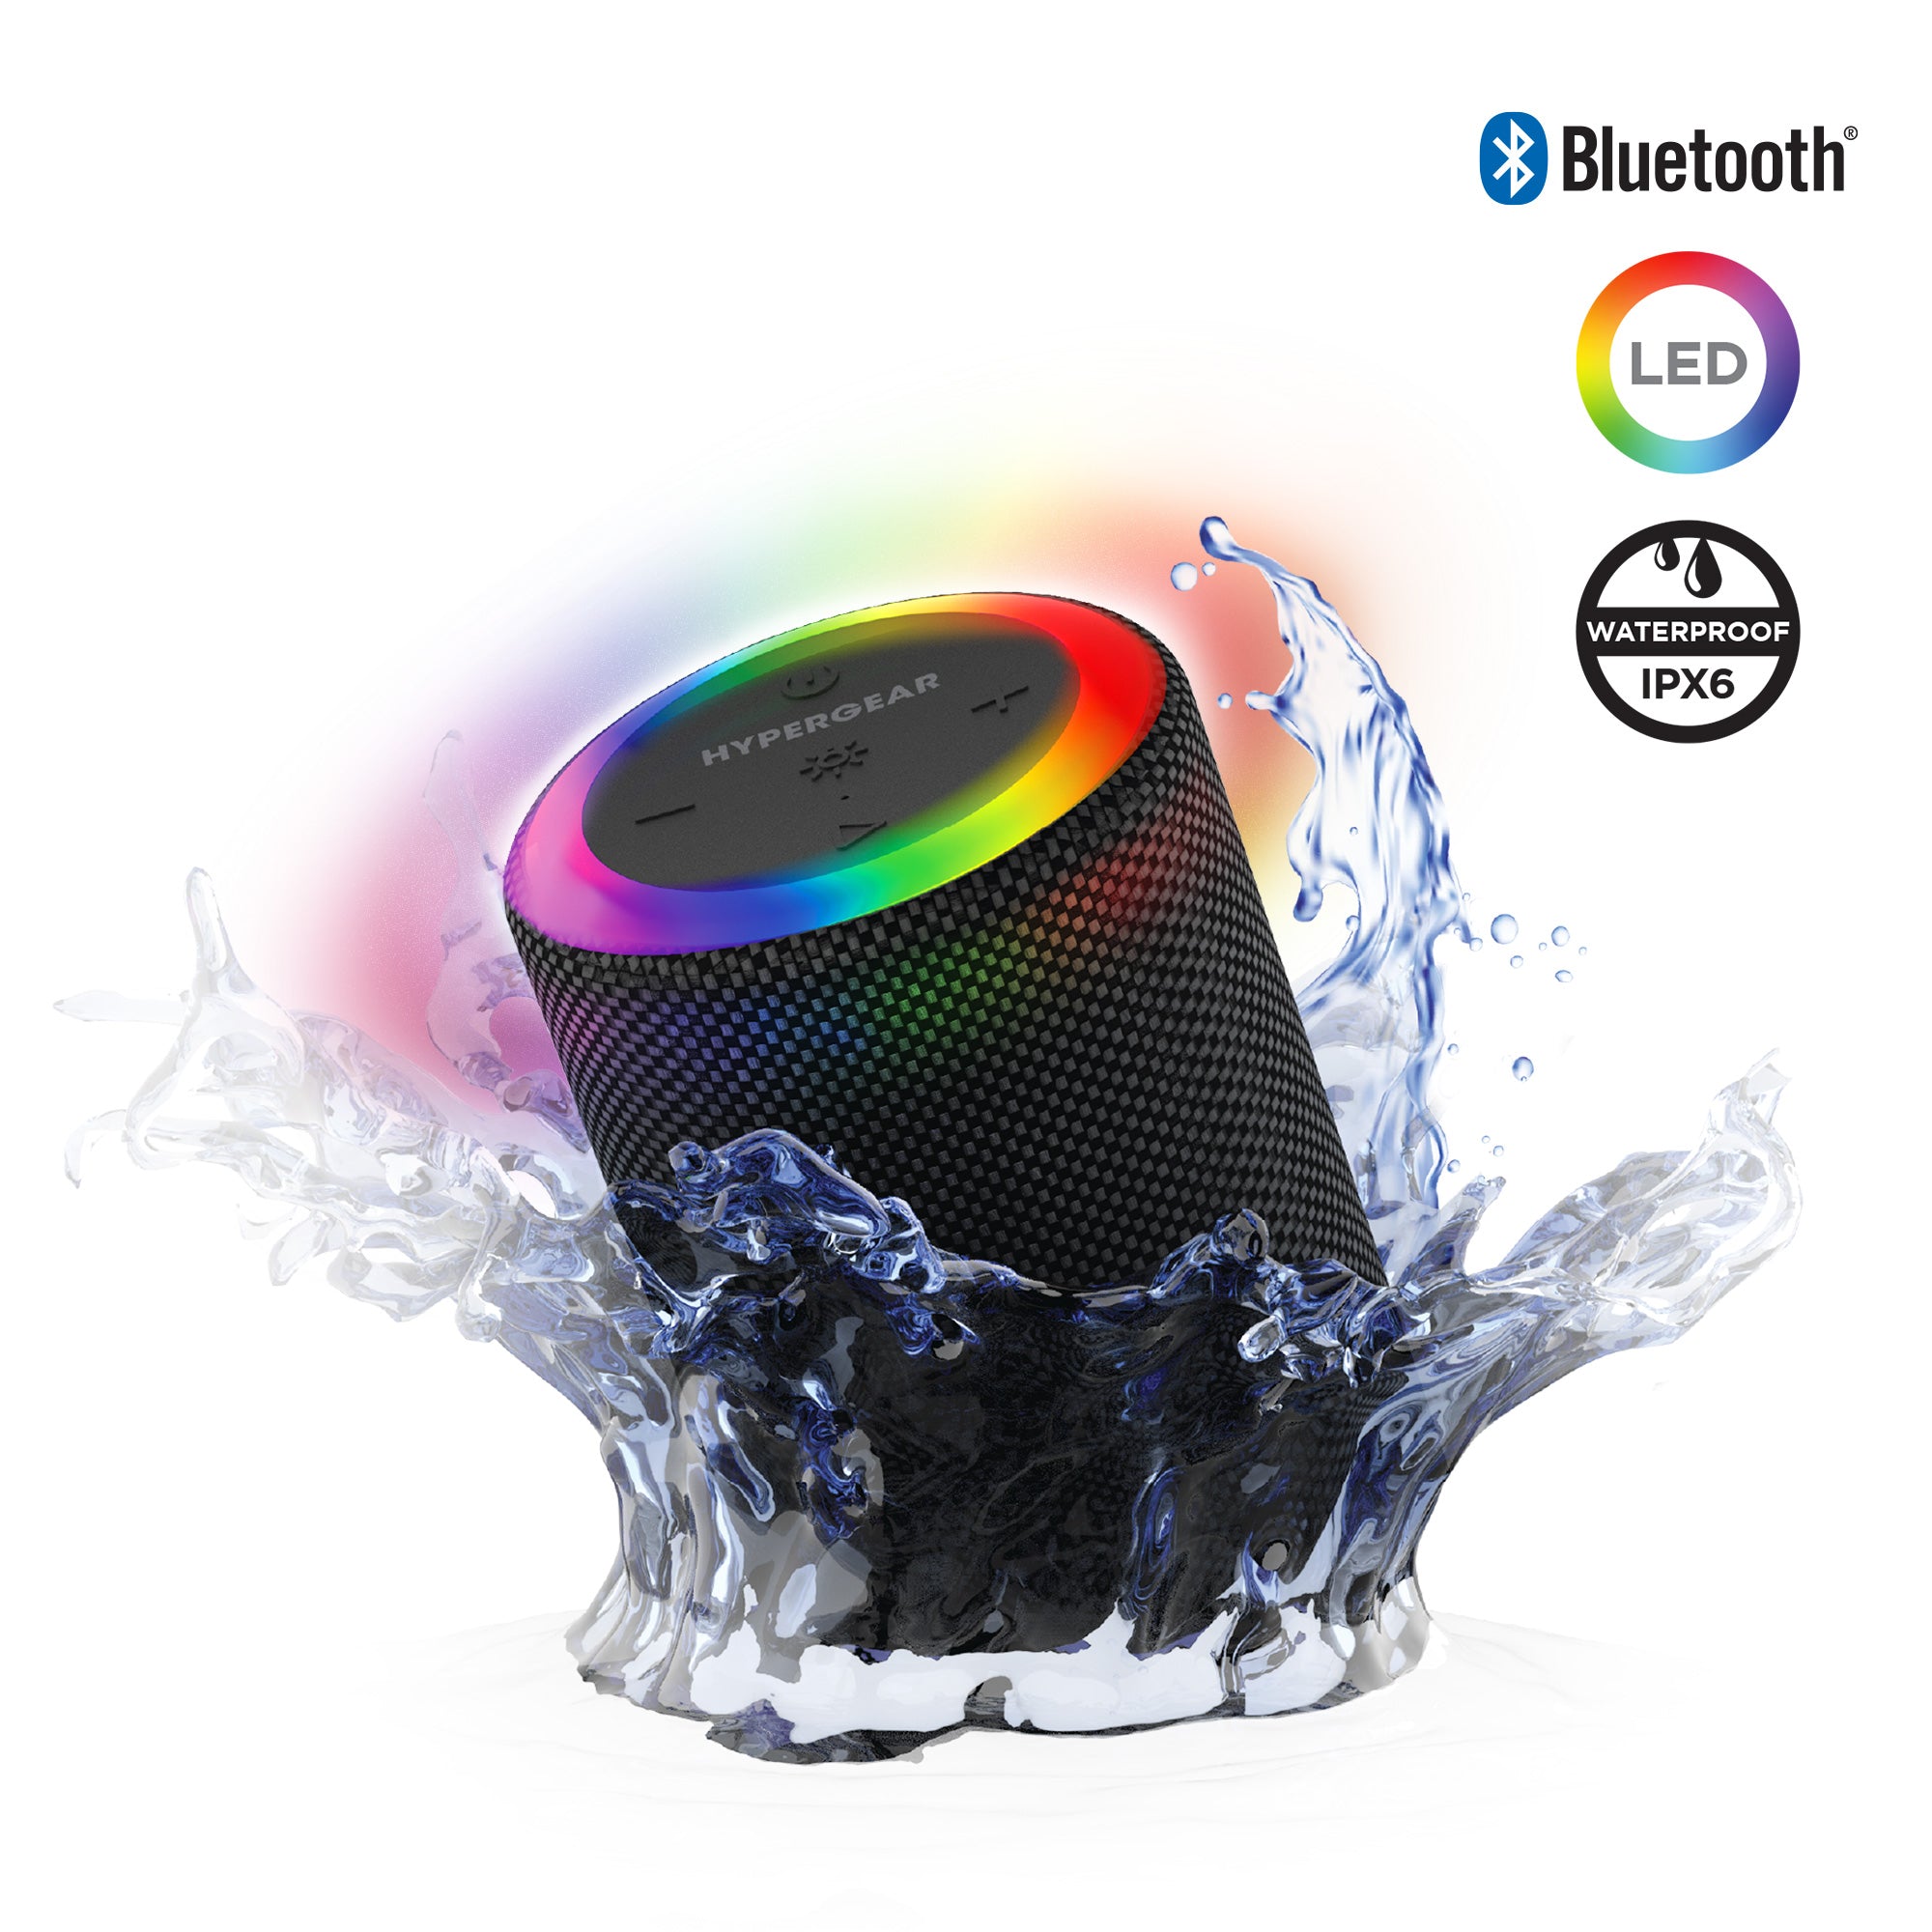 Halo Waterproof LED Wireless Speaker | Black